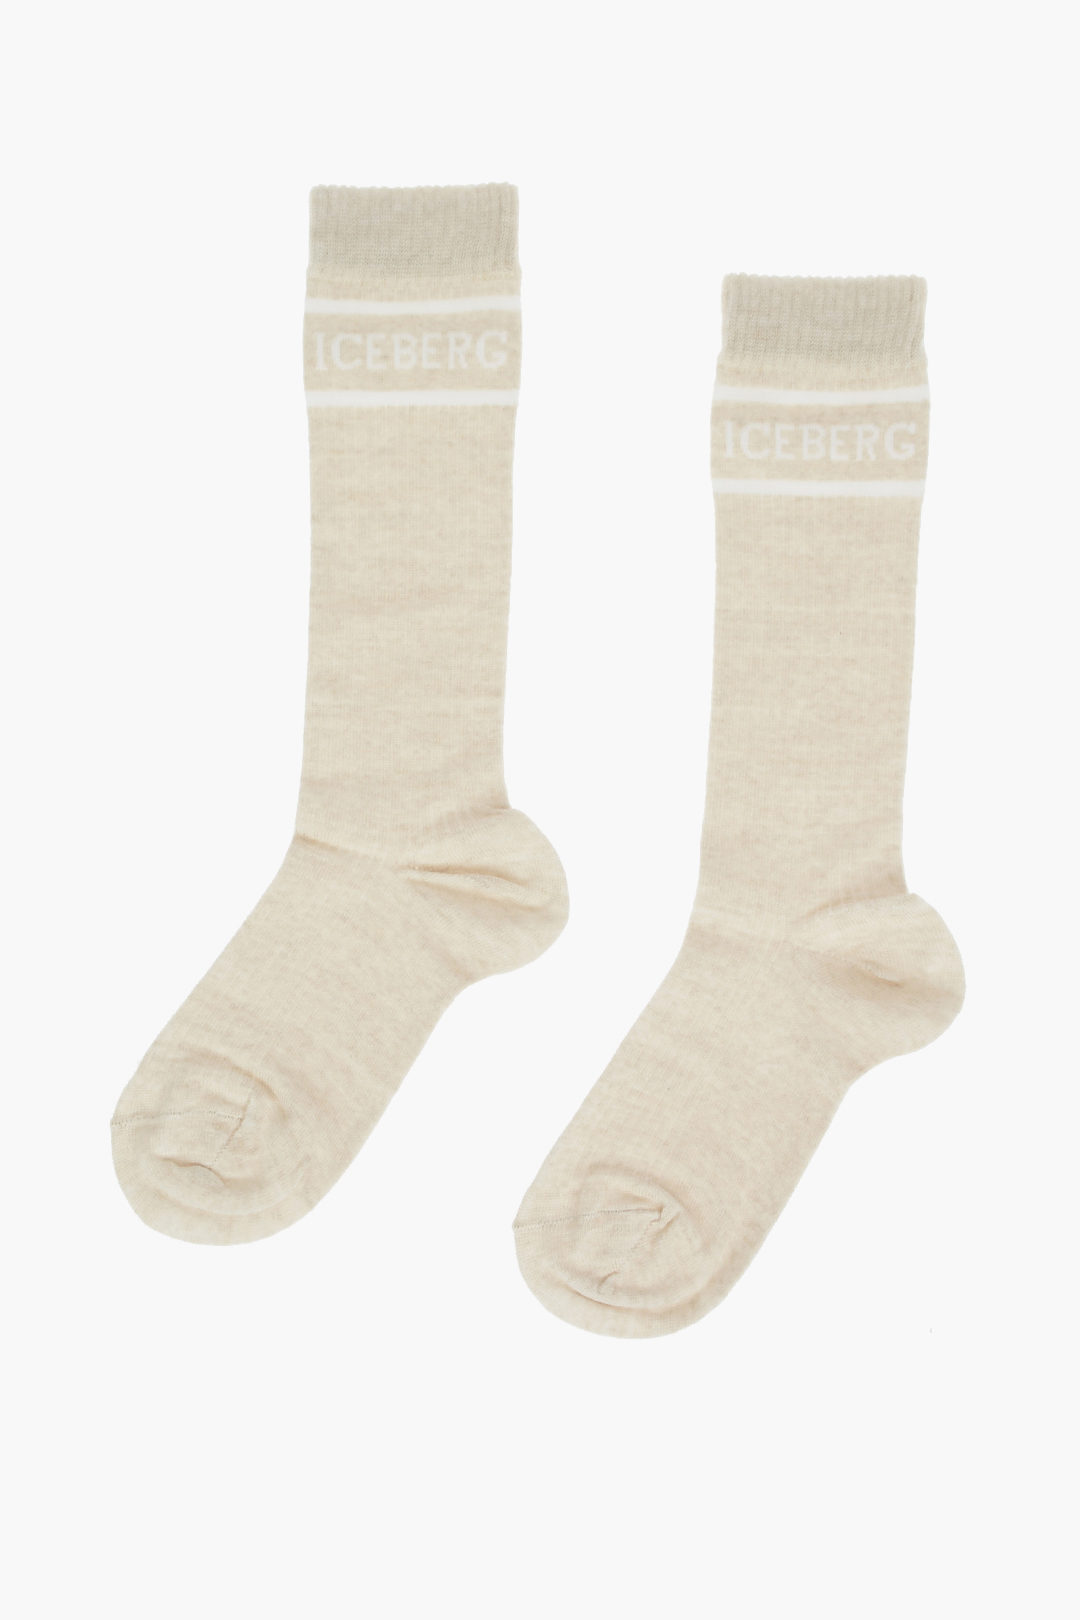 Iceberg Wool Bleng Long Socks with Lettering Logo women - Glamood Outlet